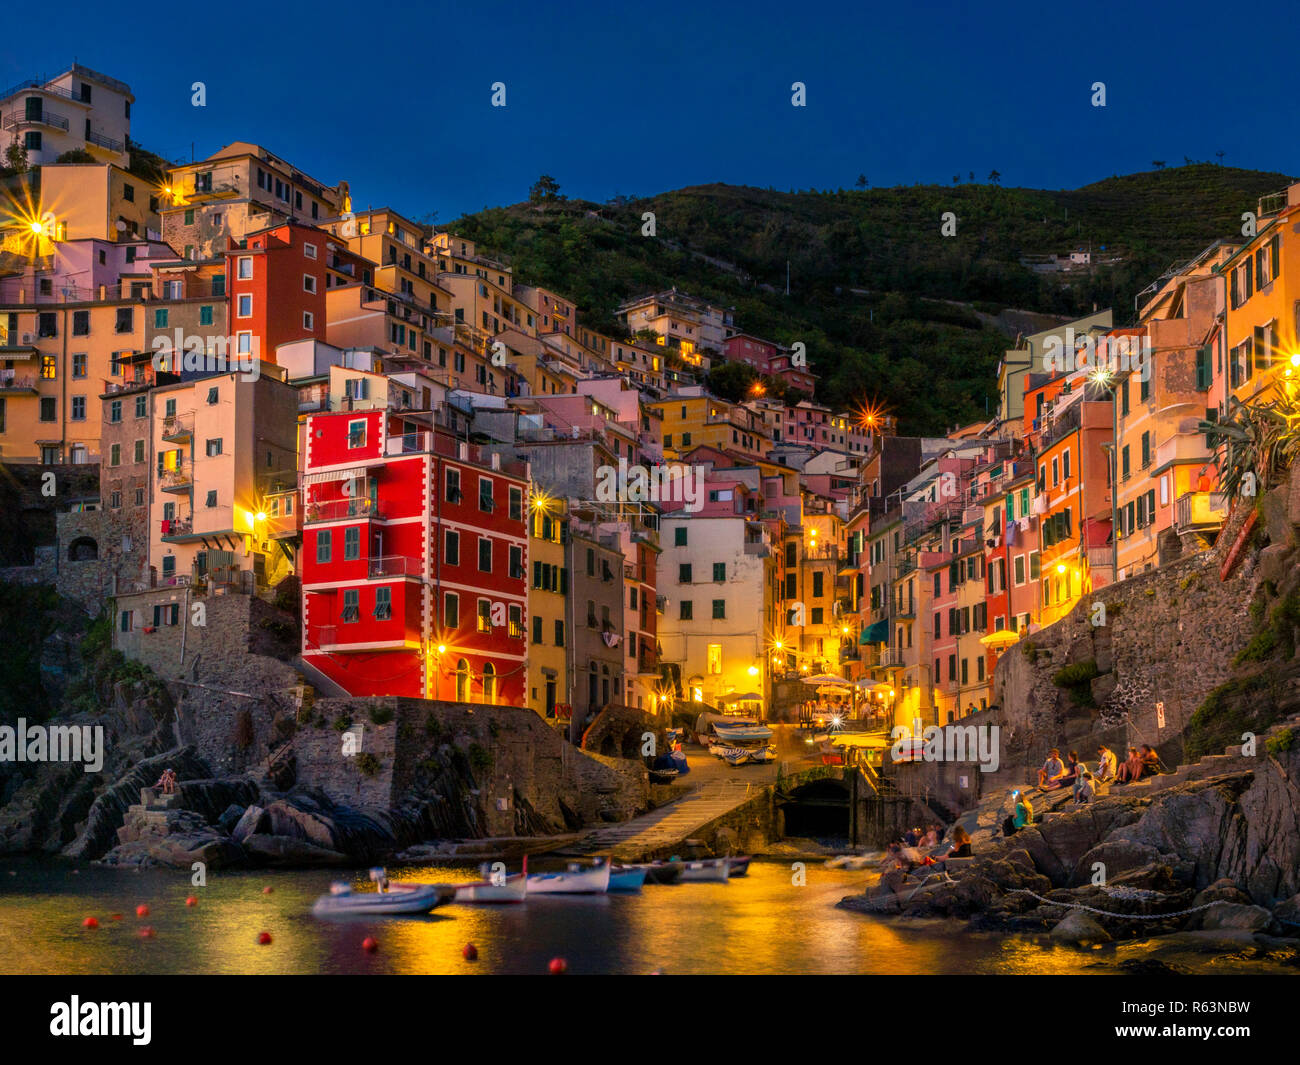 Fishing village Riomaggiore at night, Cinque Terre, La Spezia, Liguria, Italy, Europe Stock Photo